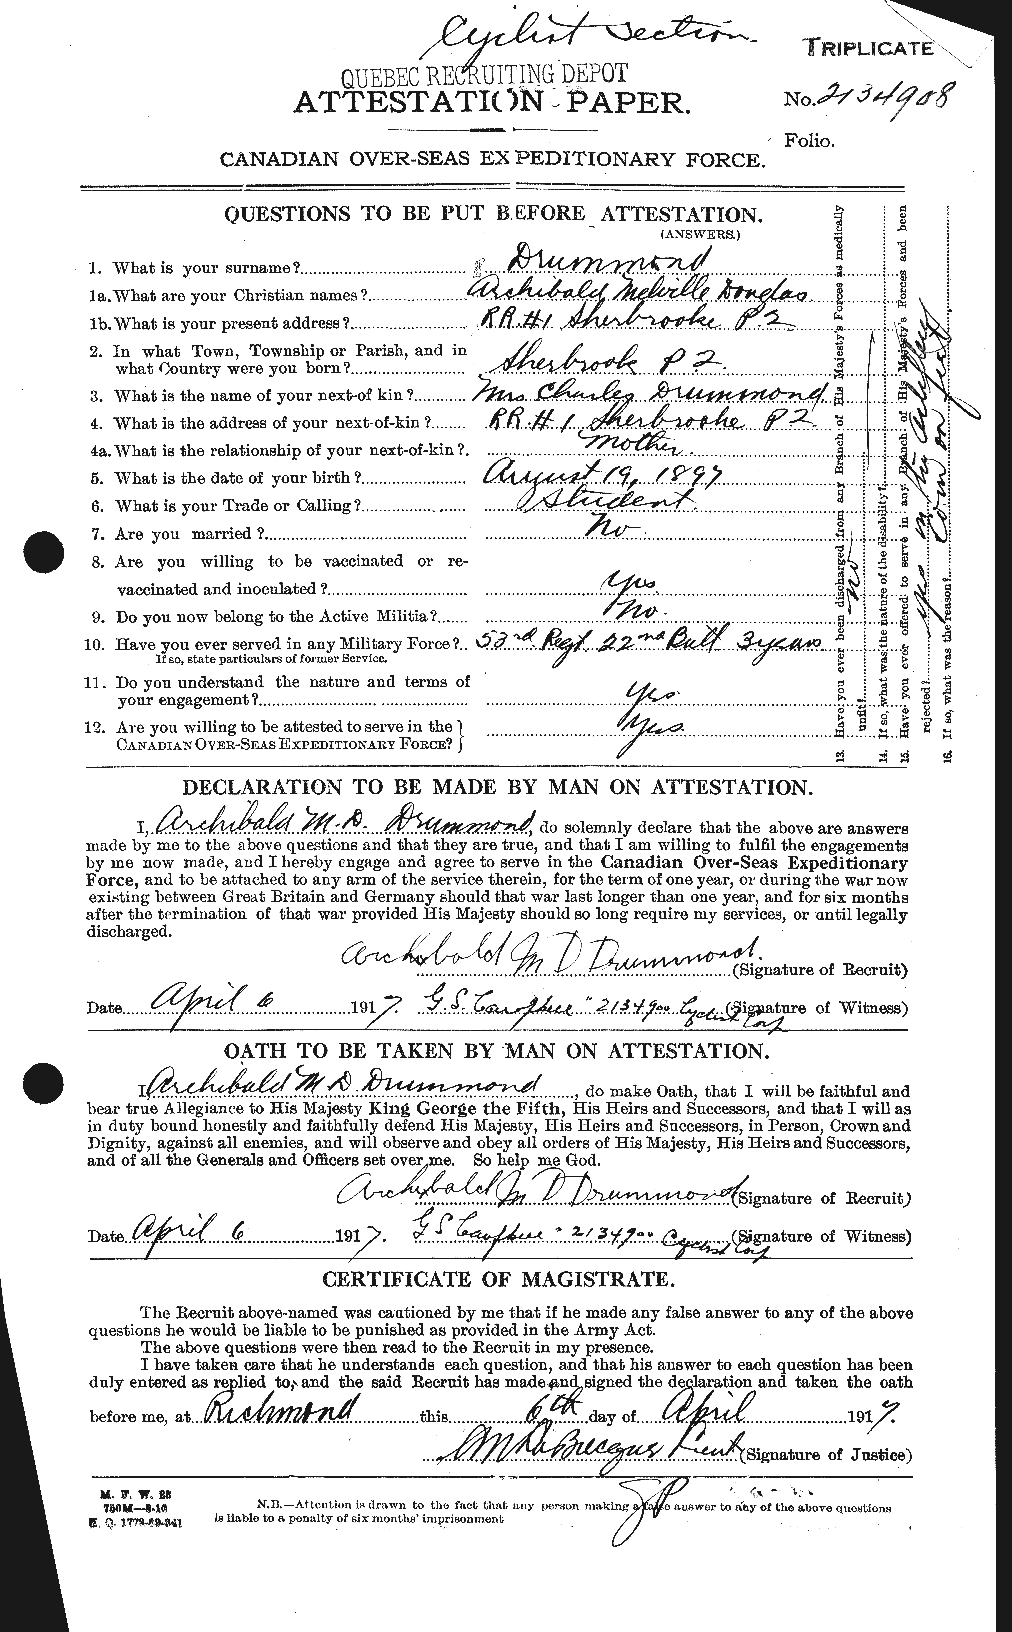 Dossiers du Personnel de la Première Guerre mondiale - CEC 300842a